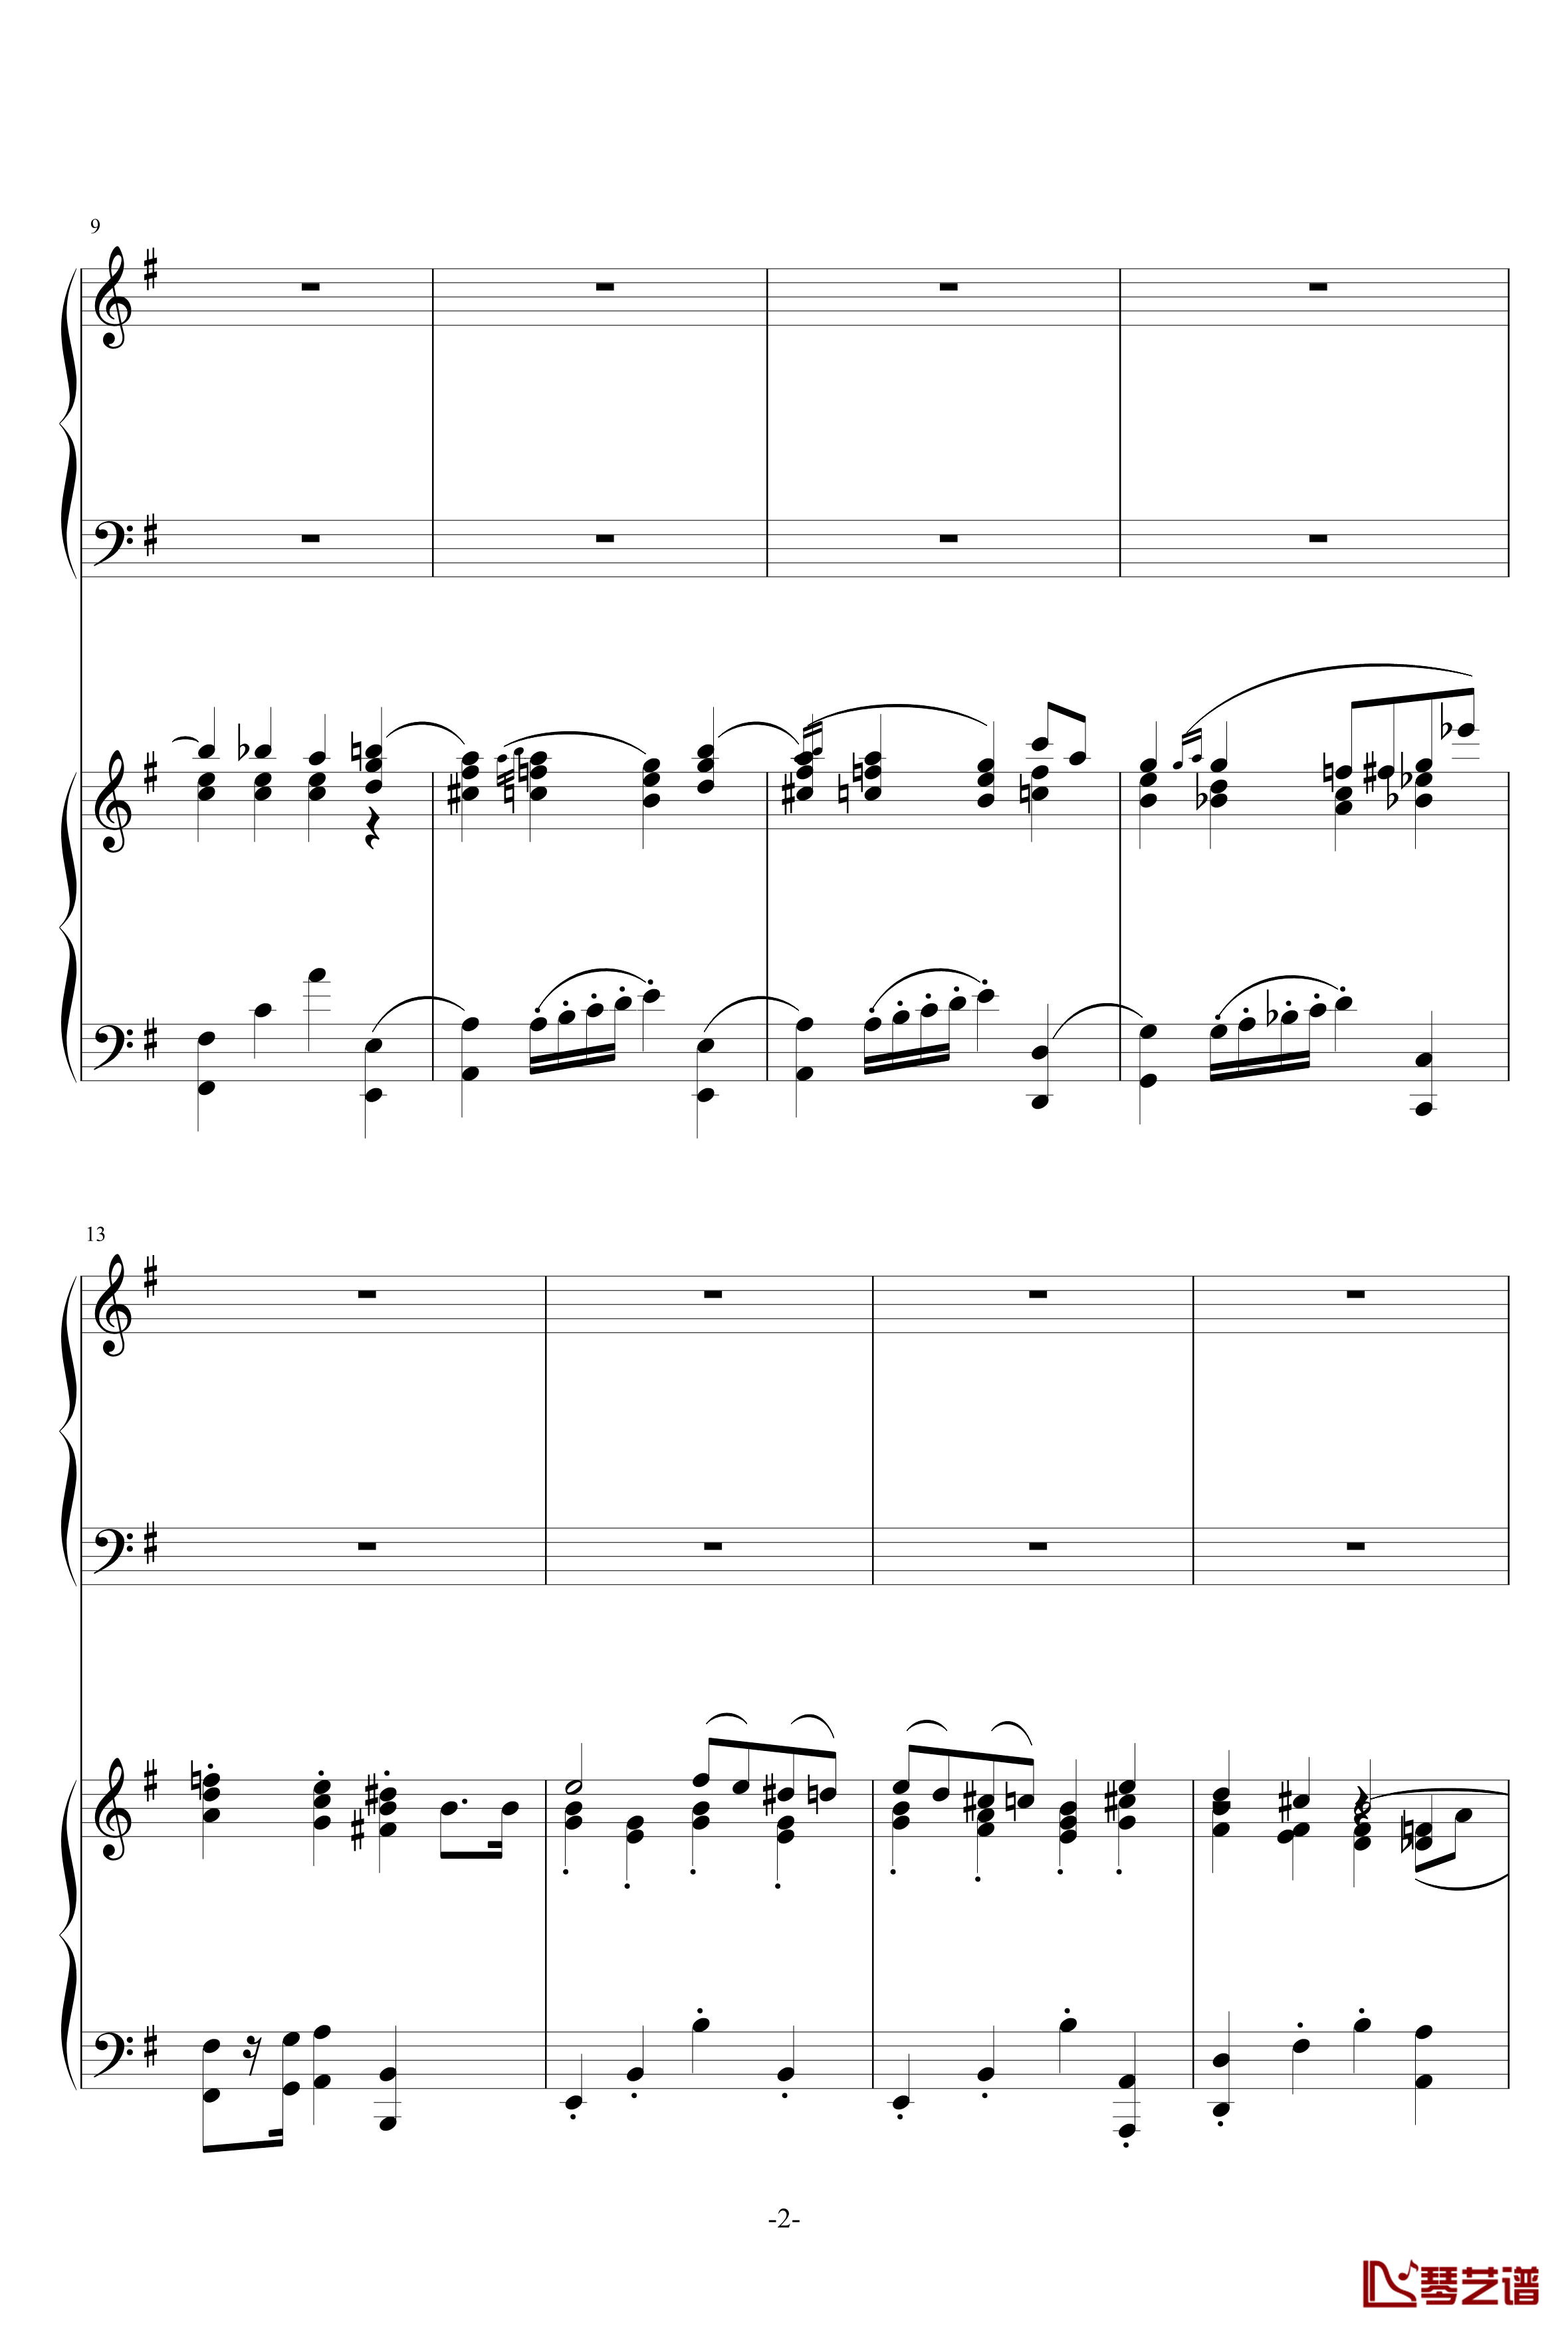 普罗科菲耶夫第三钢琴协奏曲第二乐章钢琴谱2